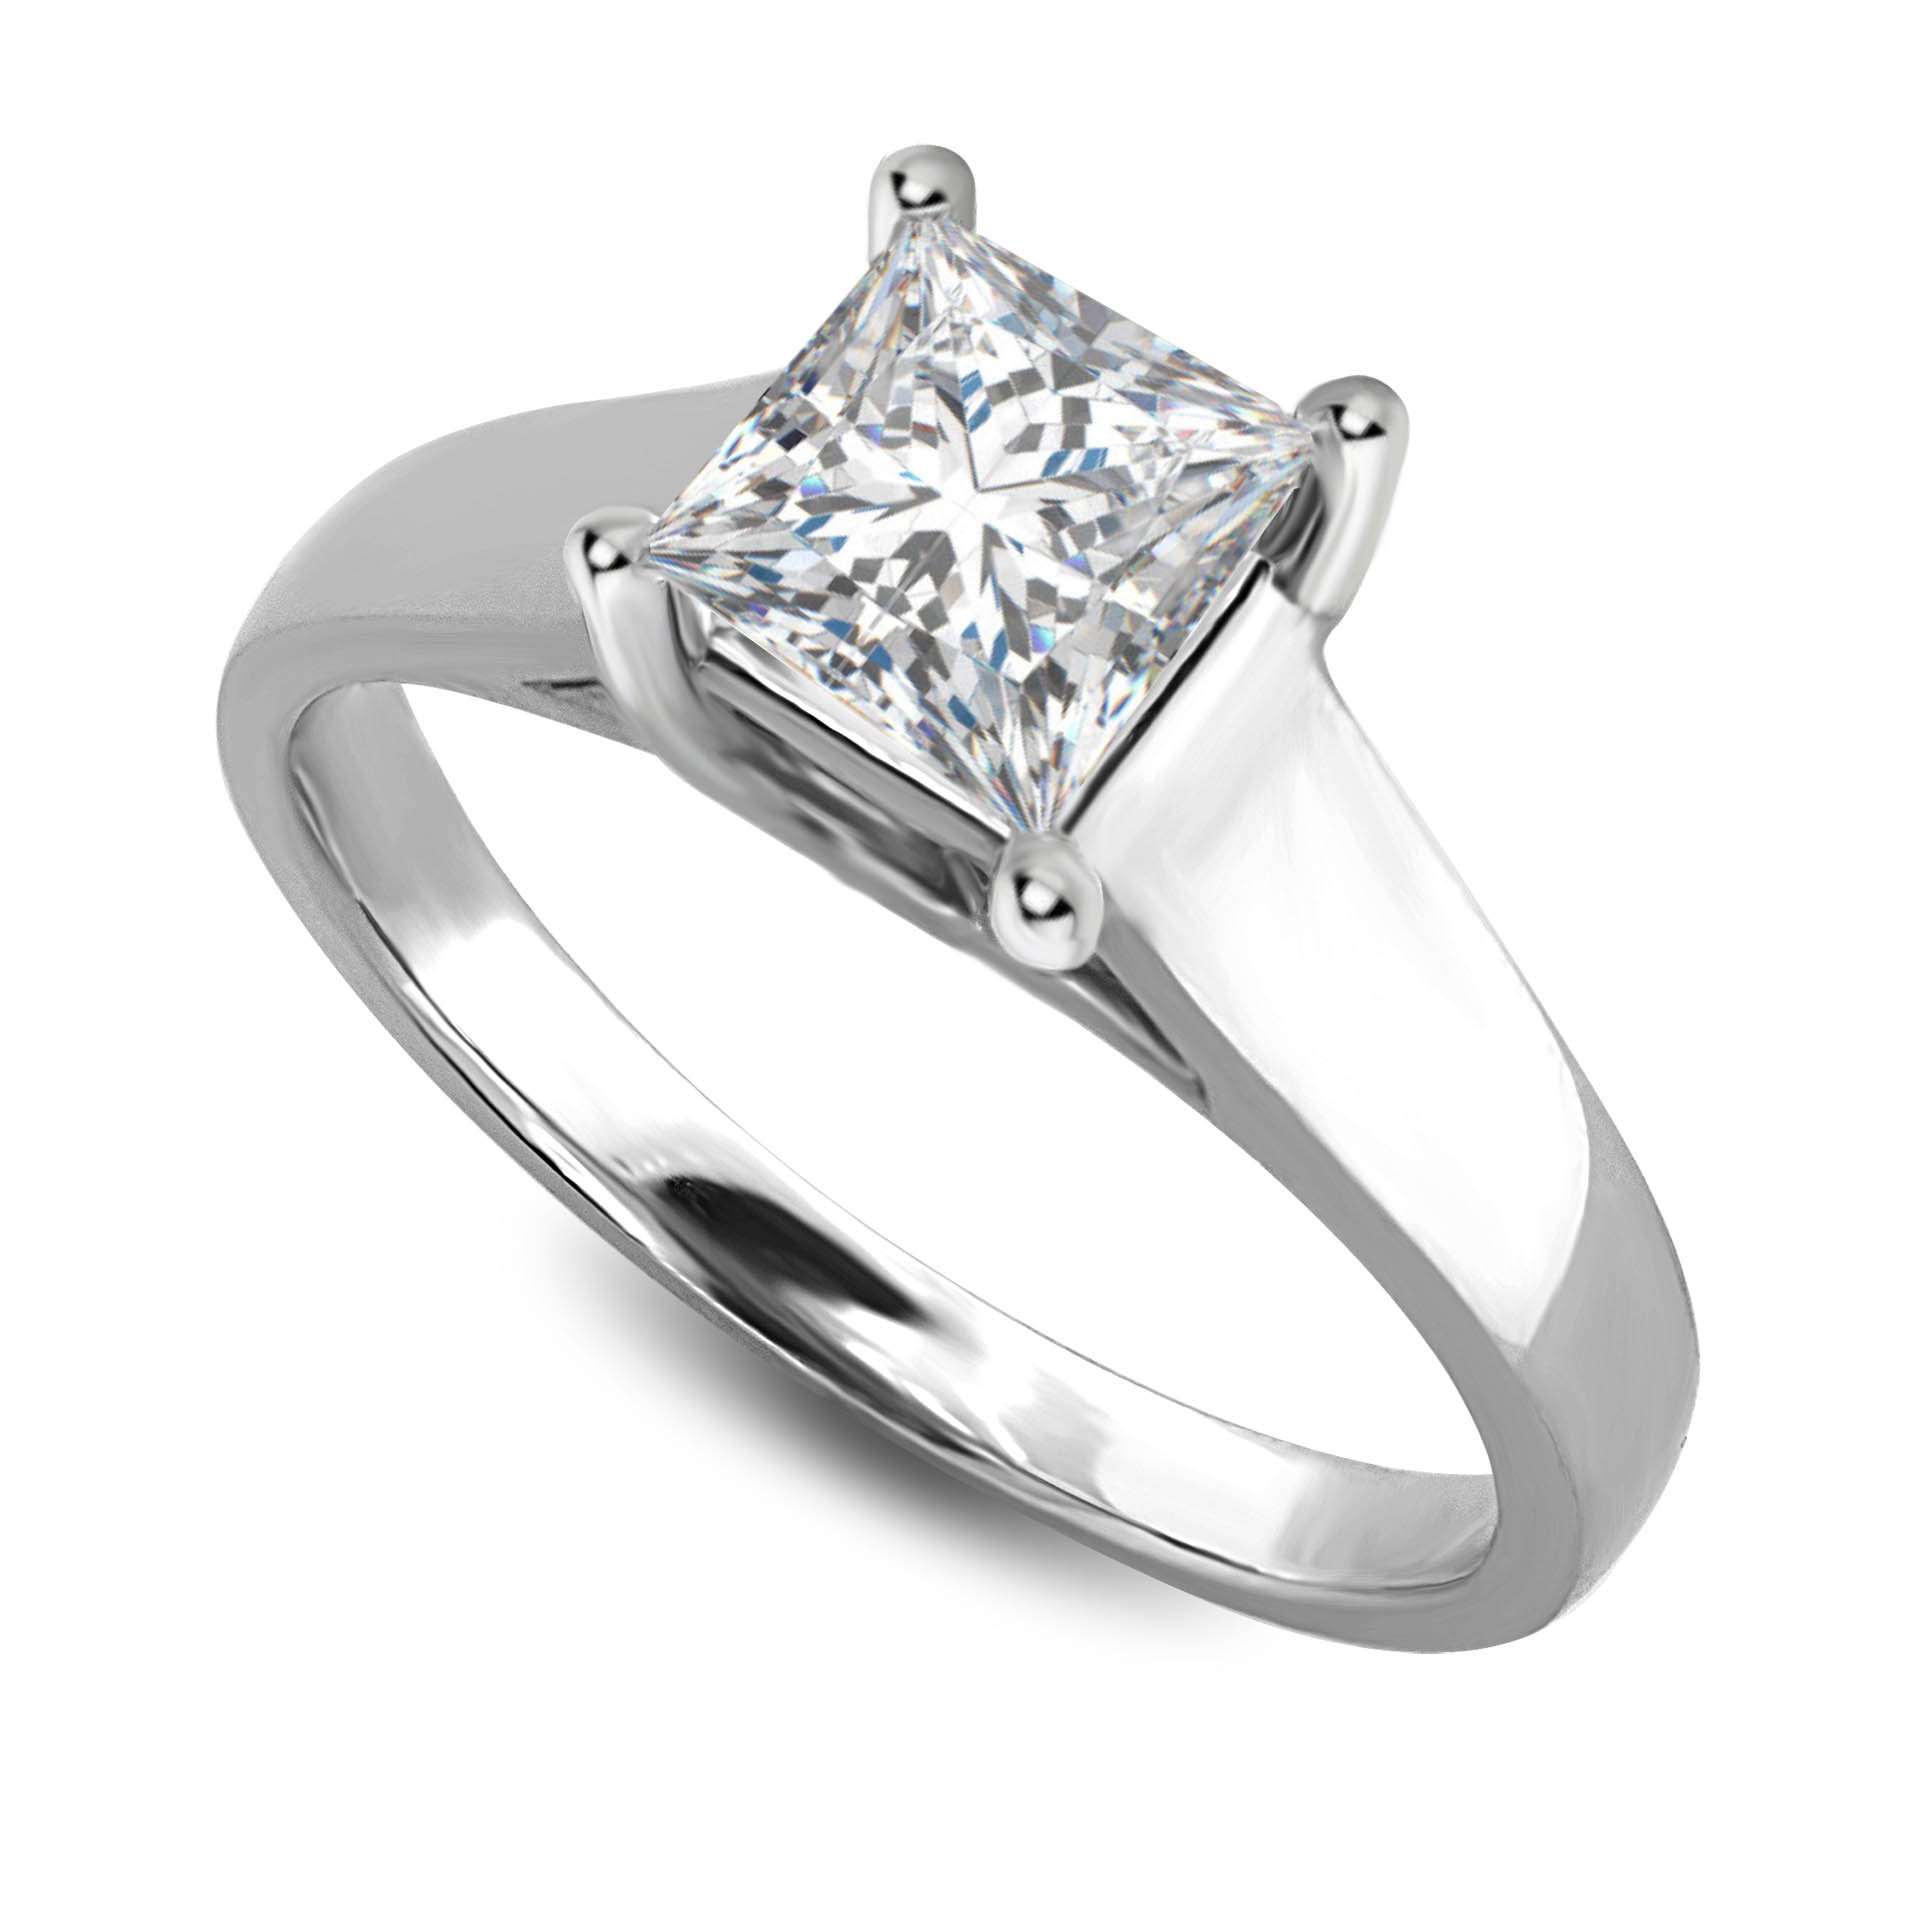 Asscher Cut Diamond Engagement Rings
 Princess Cushion and Asscher Cut Diamond Solitaire